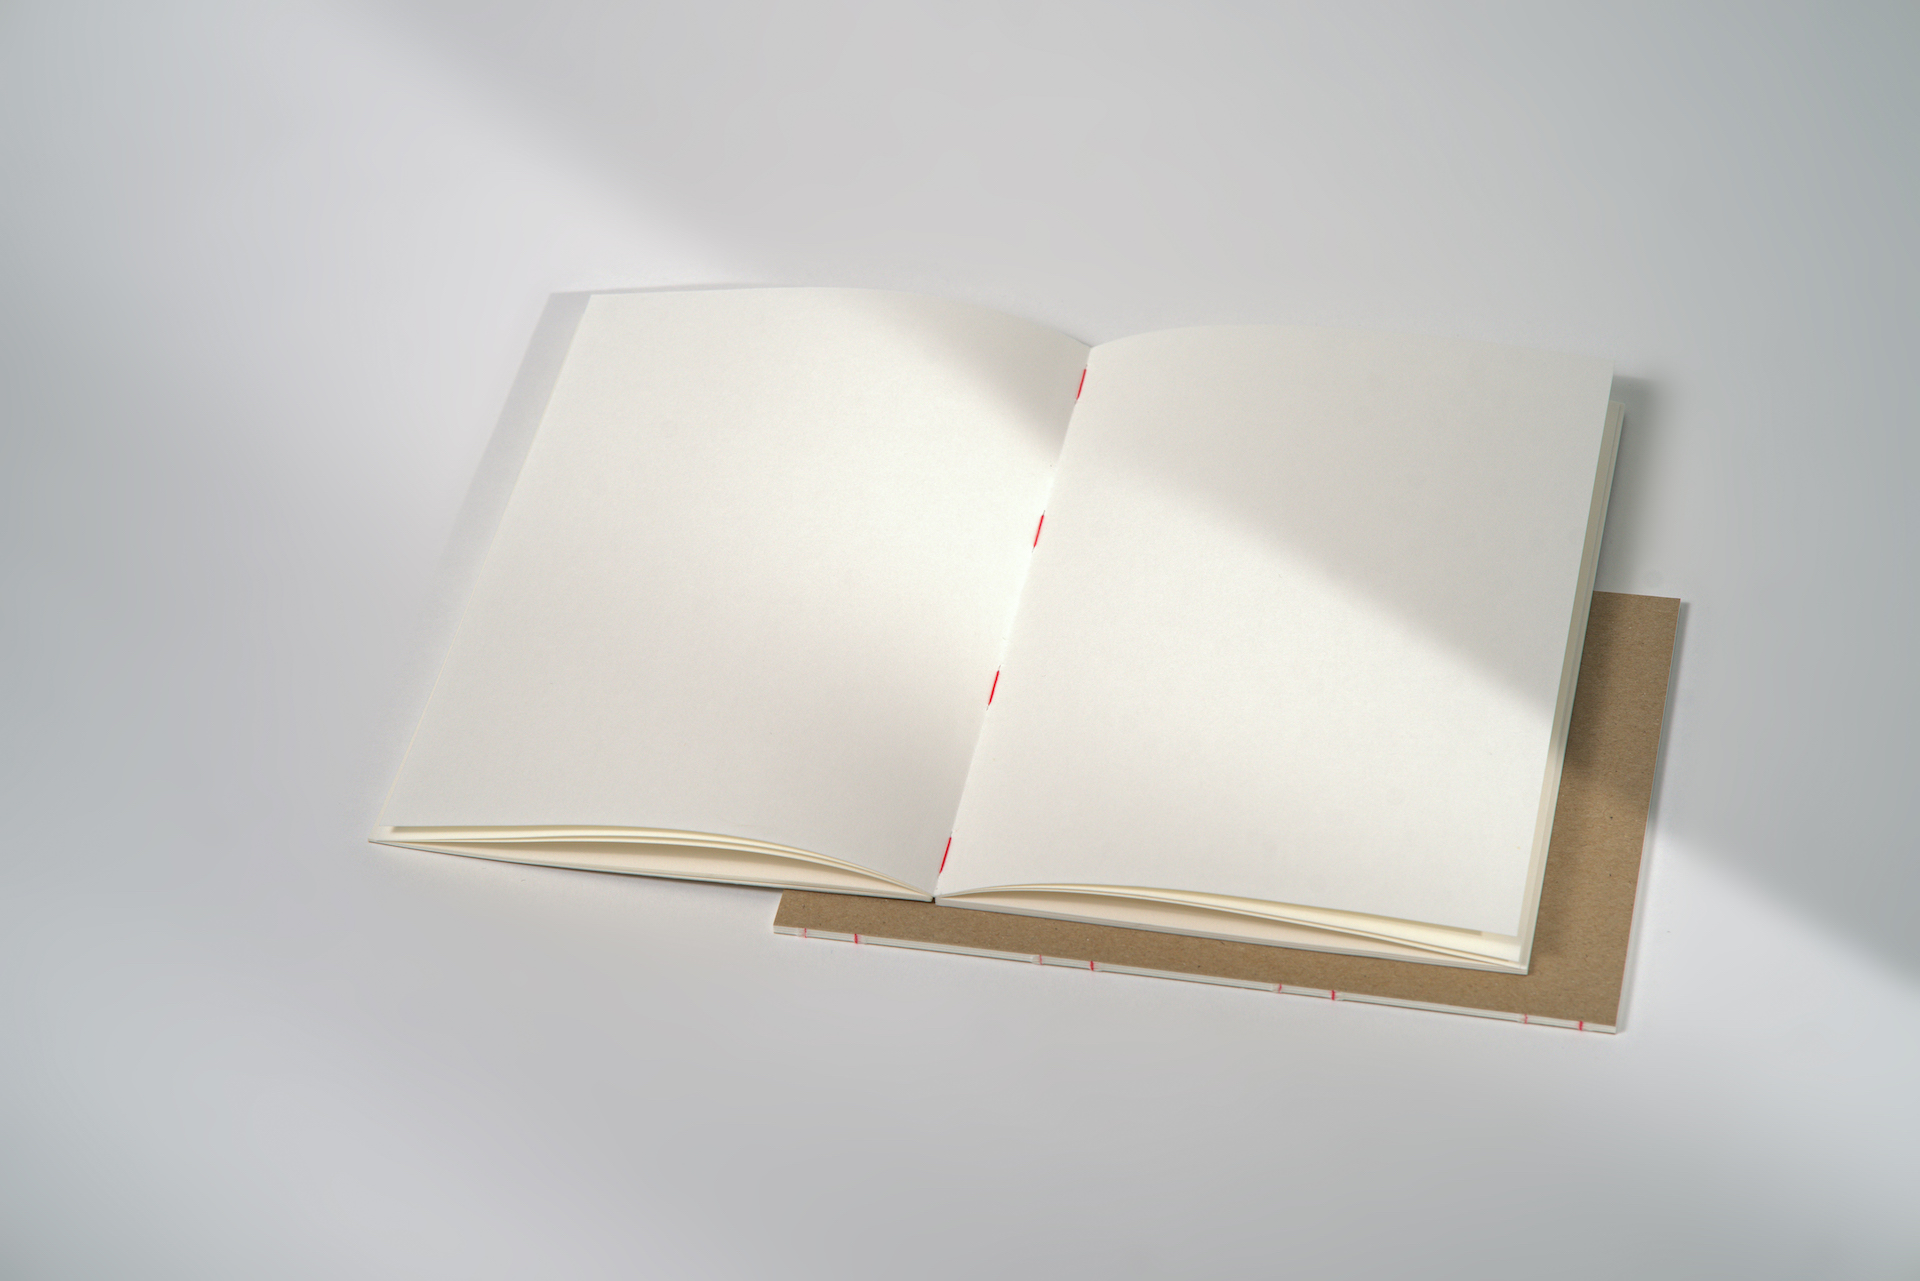 Fadengeheftetes Skizzenbuch in A5-Größe mit 48 Seiten aus naturweißem, 120g starkem Zeichenpapier und festem Einband aus Recyclingkarton. Liegt geöffnet flach auf.